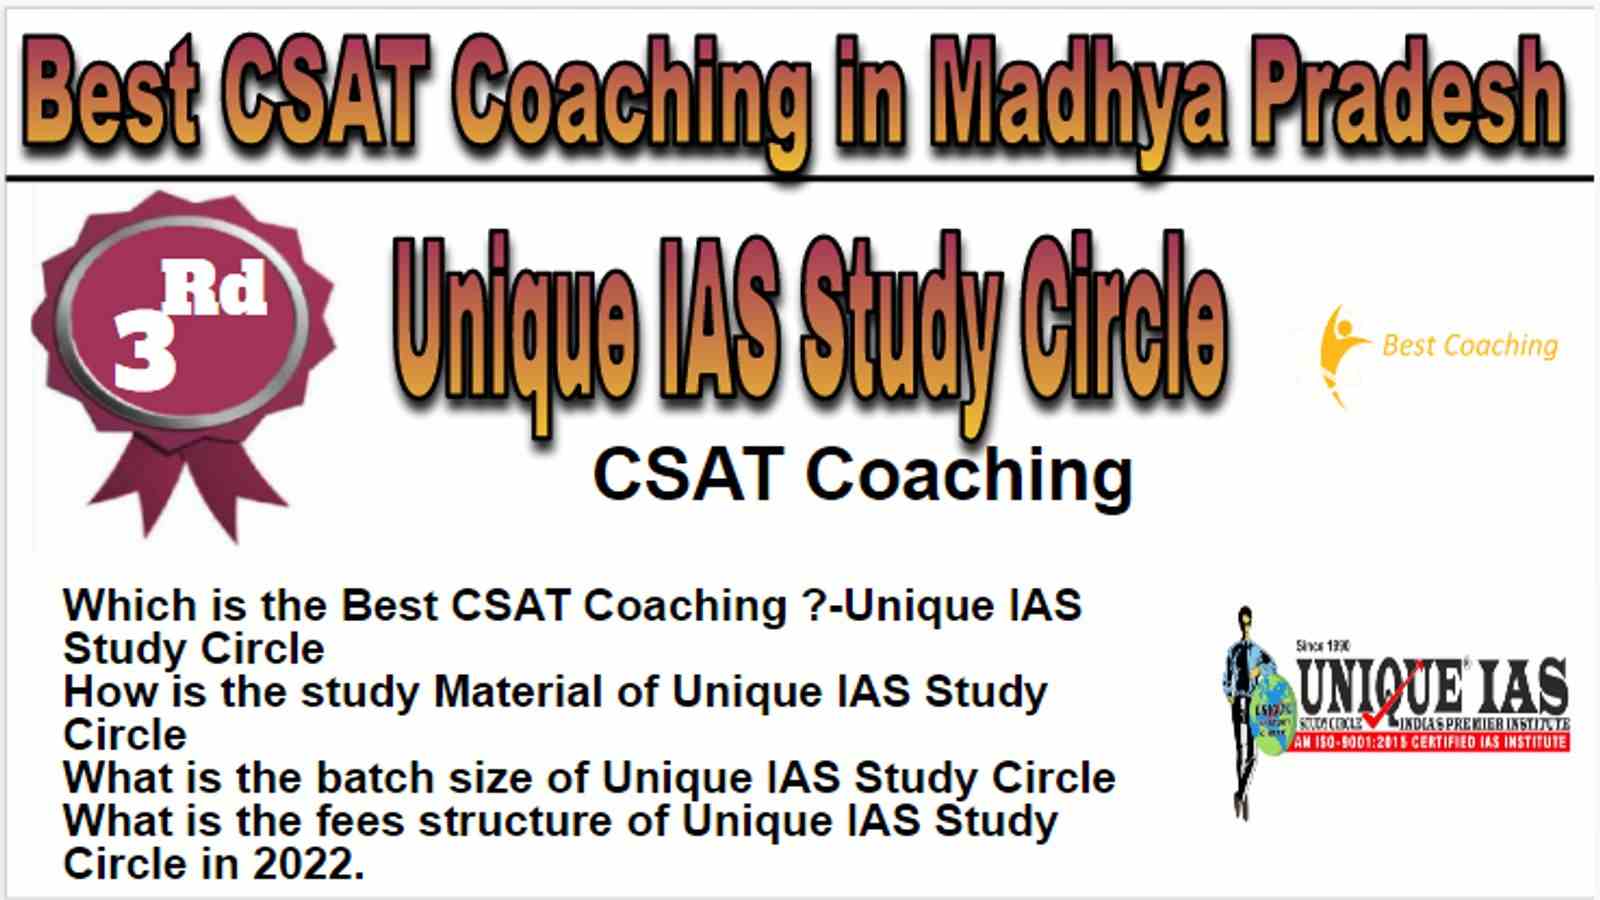 Rank 3 Best CSAT Coaching in Madhya Pradesh